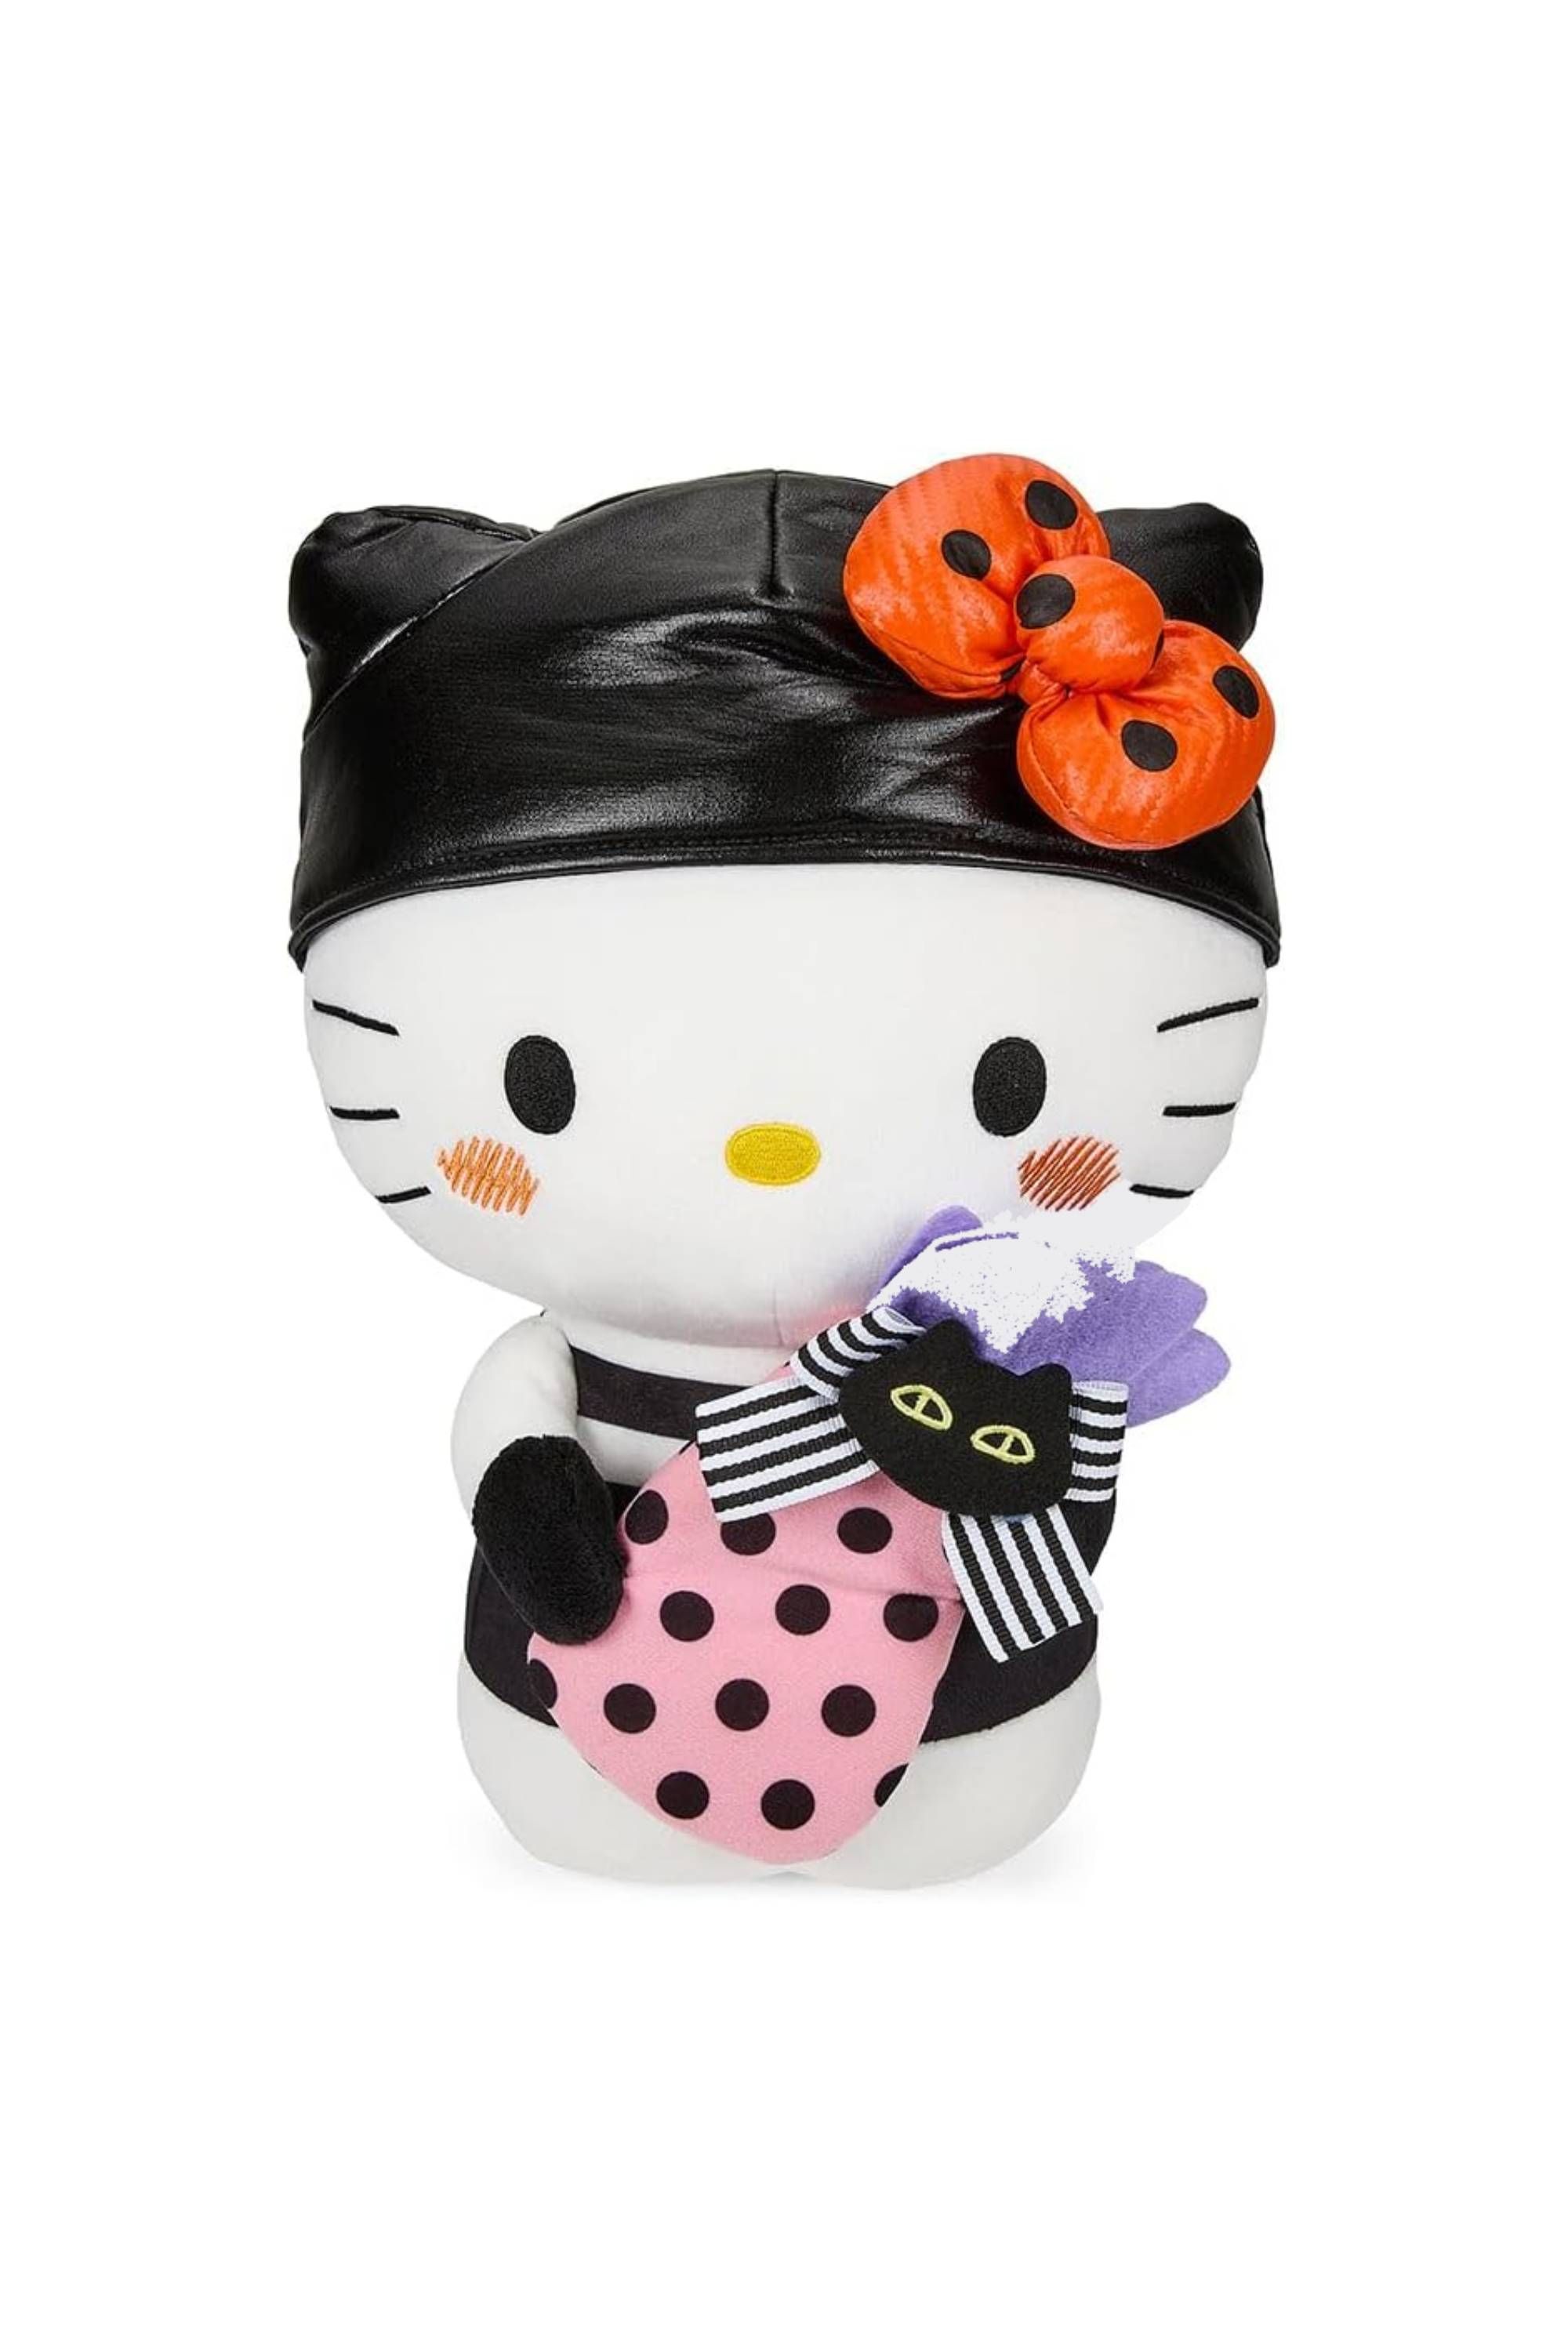 Sanrio: Hello Kitty - 13 Plush - Hello Kitty Premium Plush